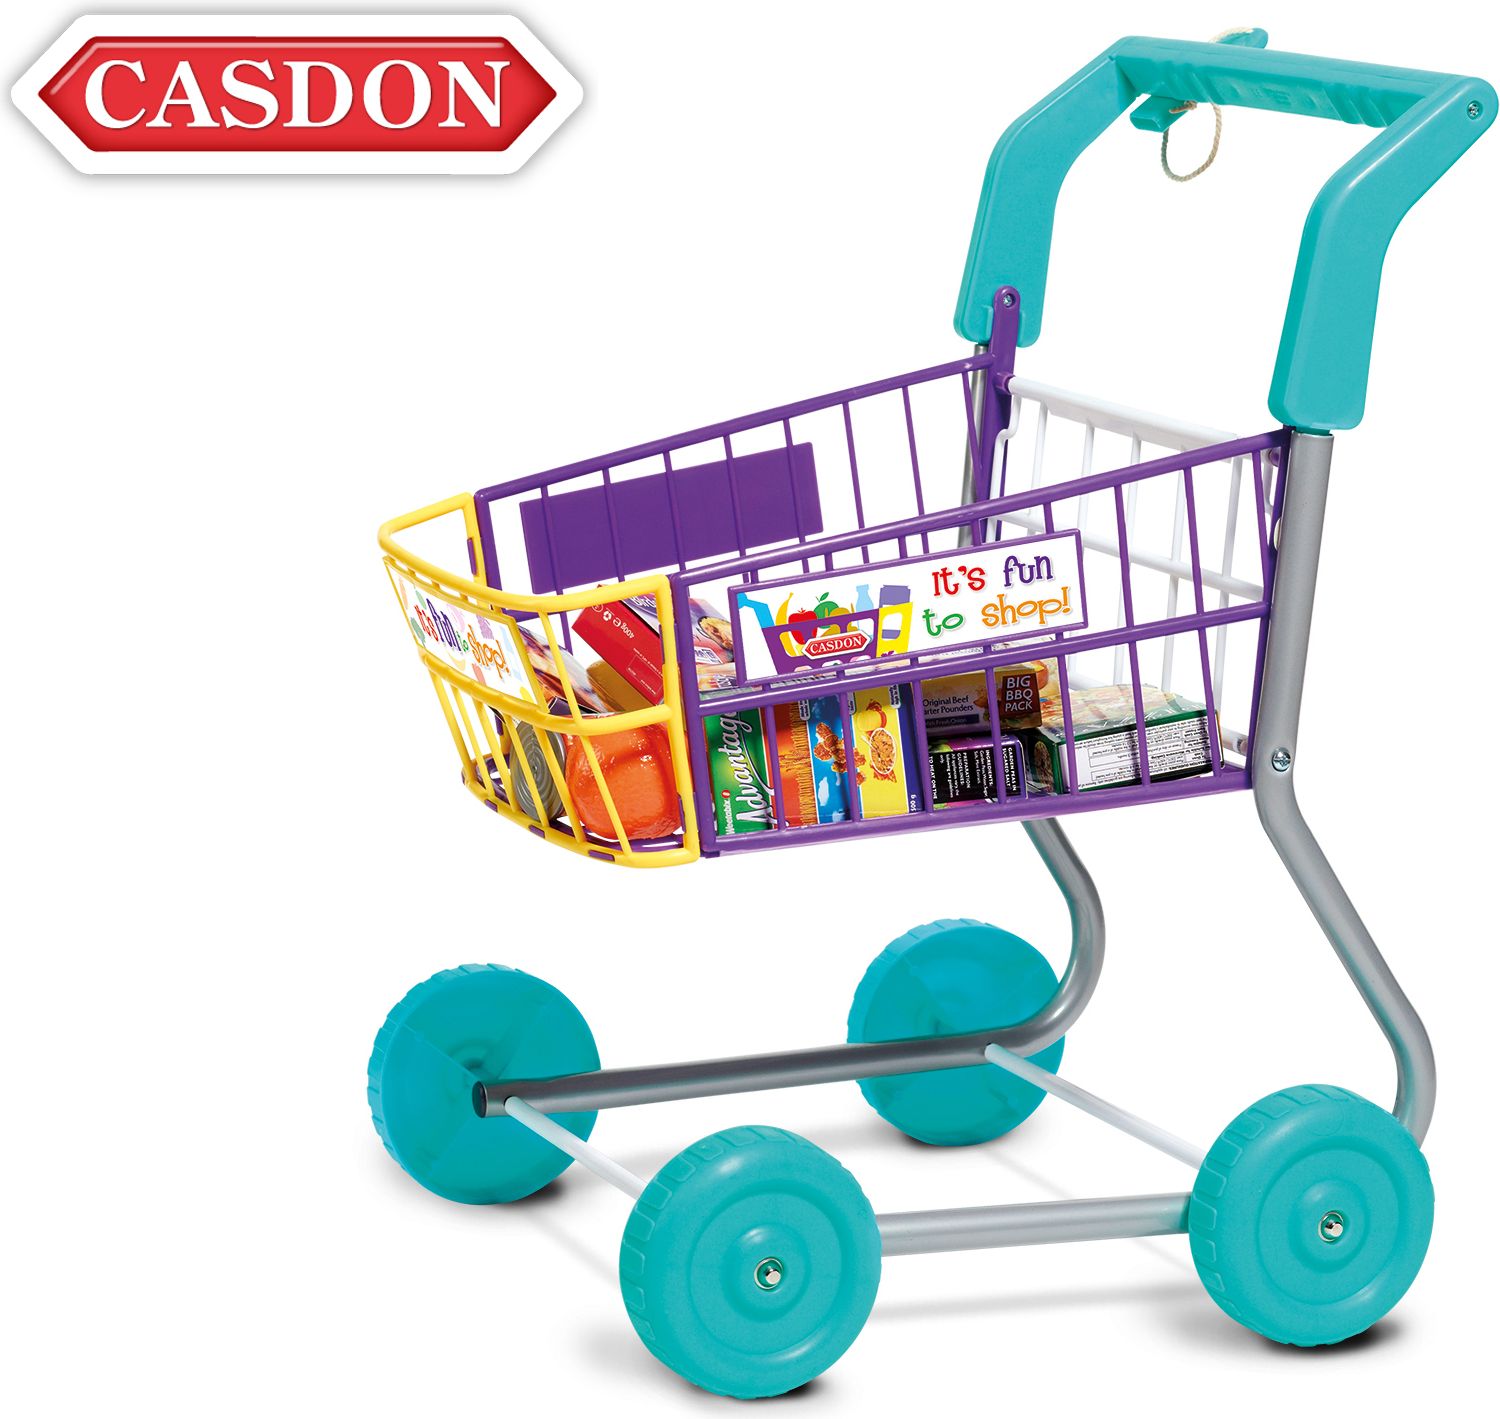 CASDON nákupní vozík 48 cm - obrázek 1